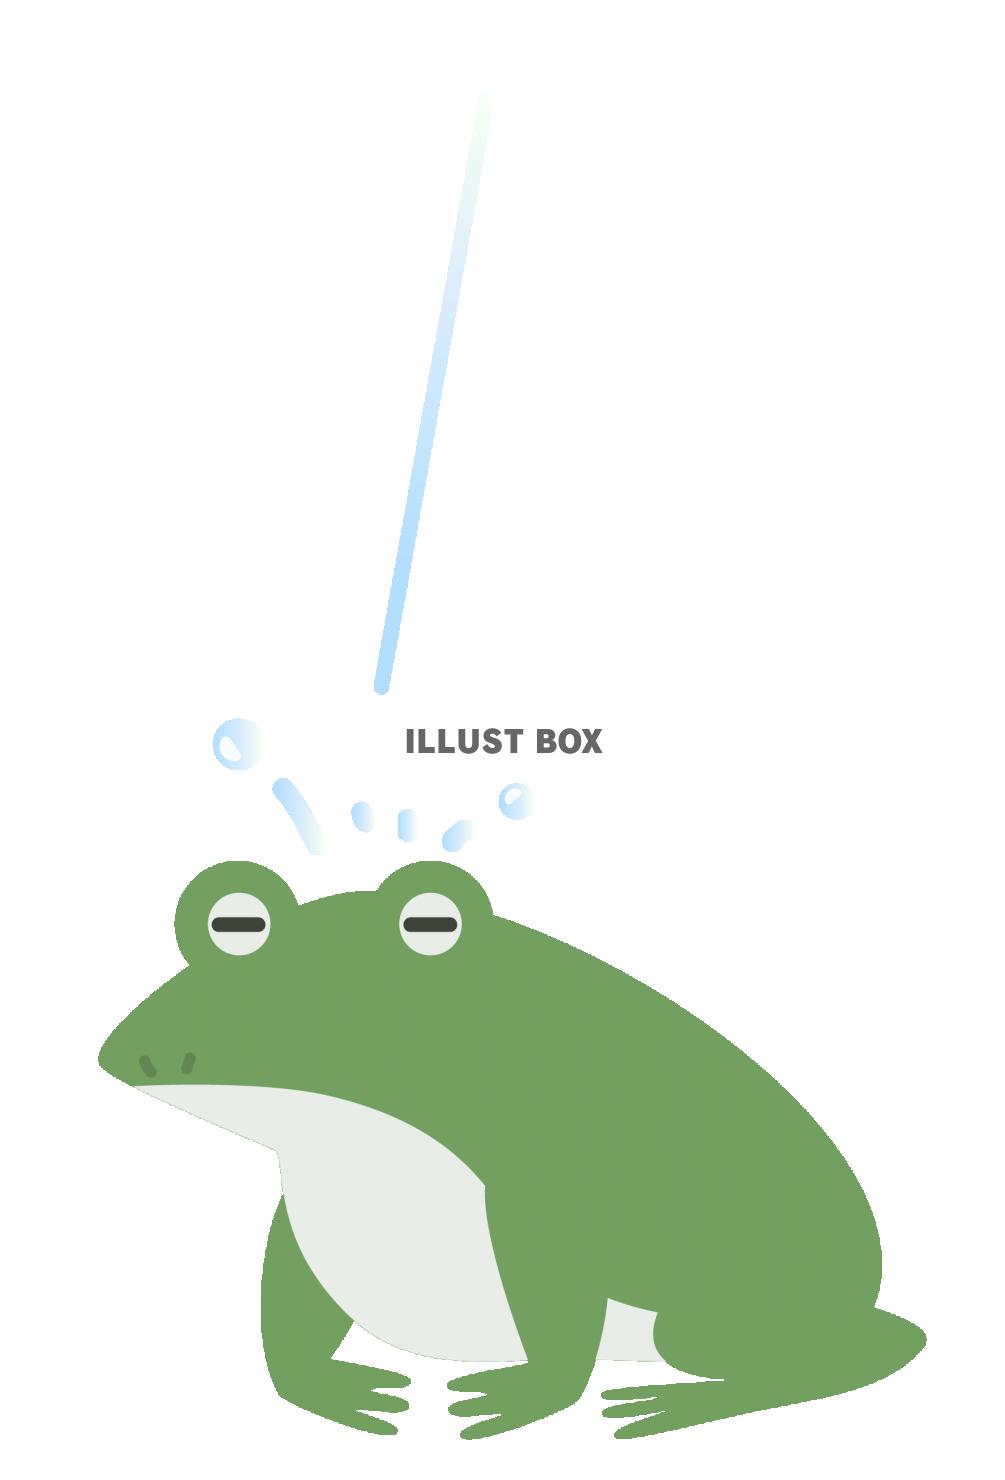 雨に打たれる蛙のイラスト